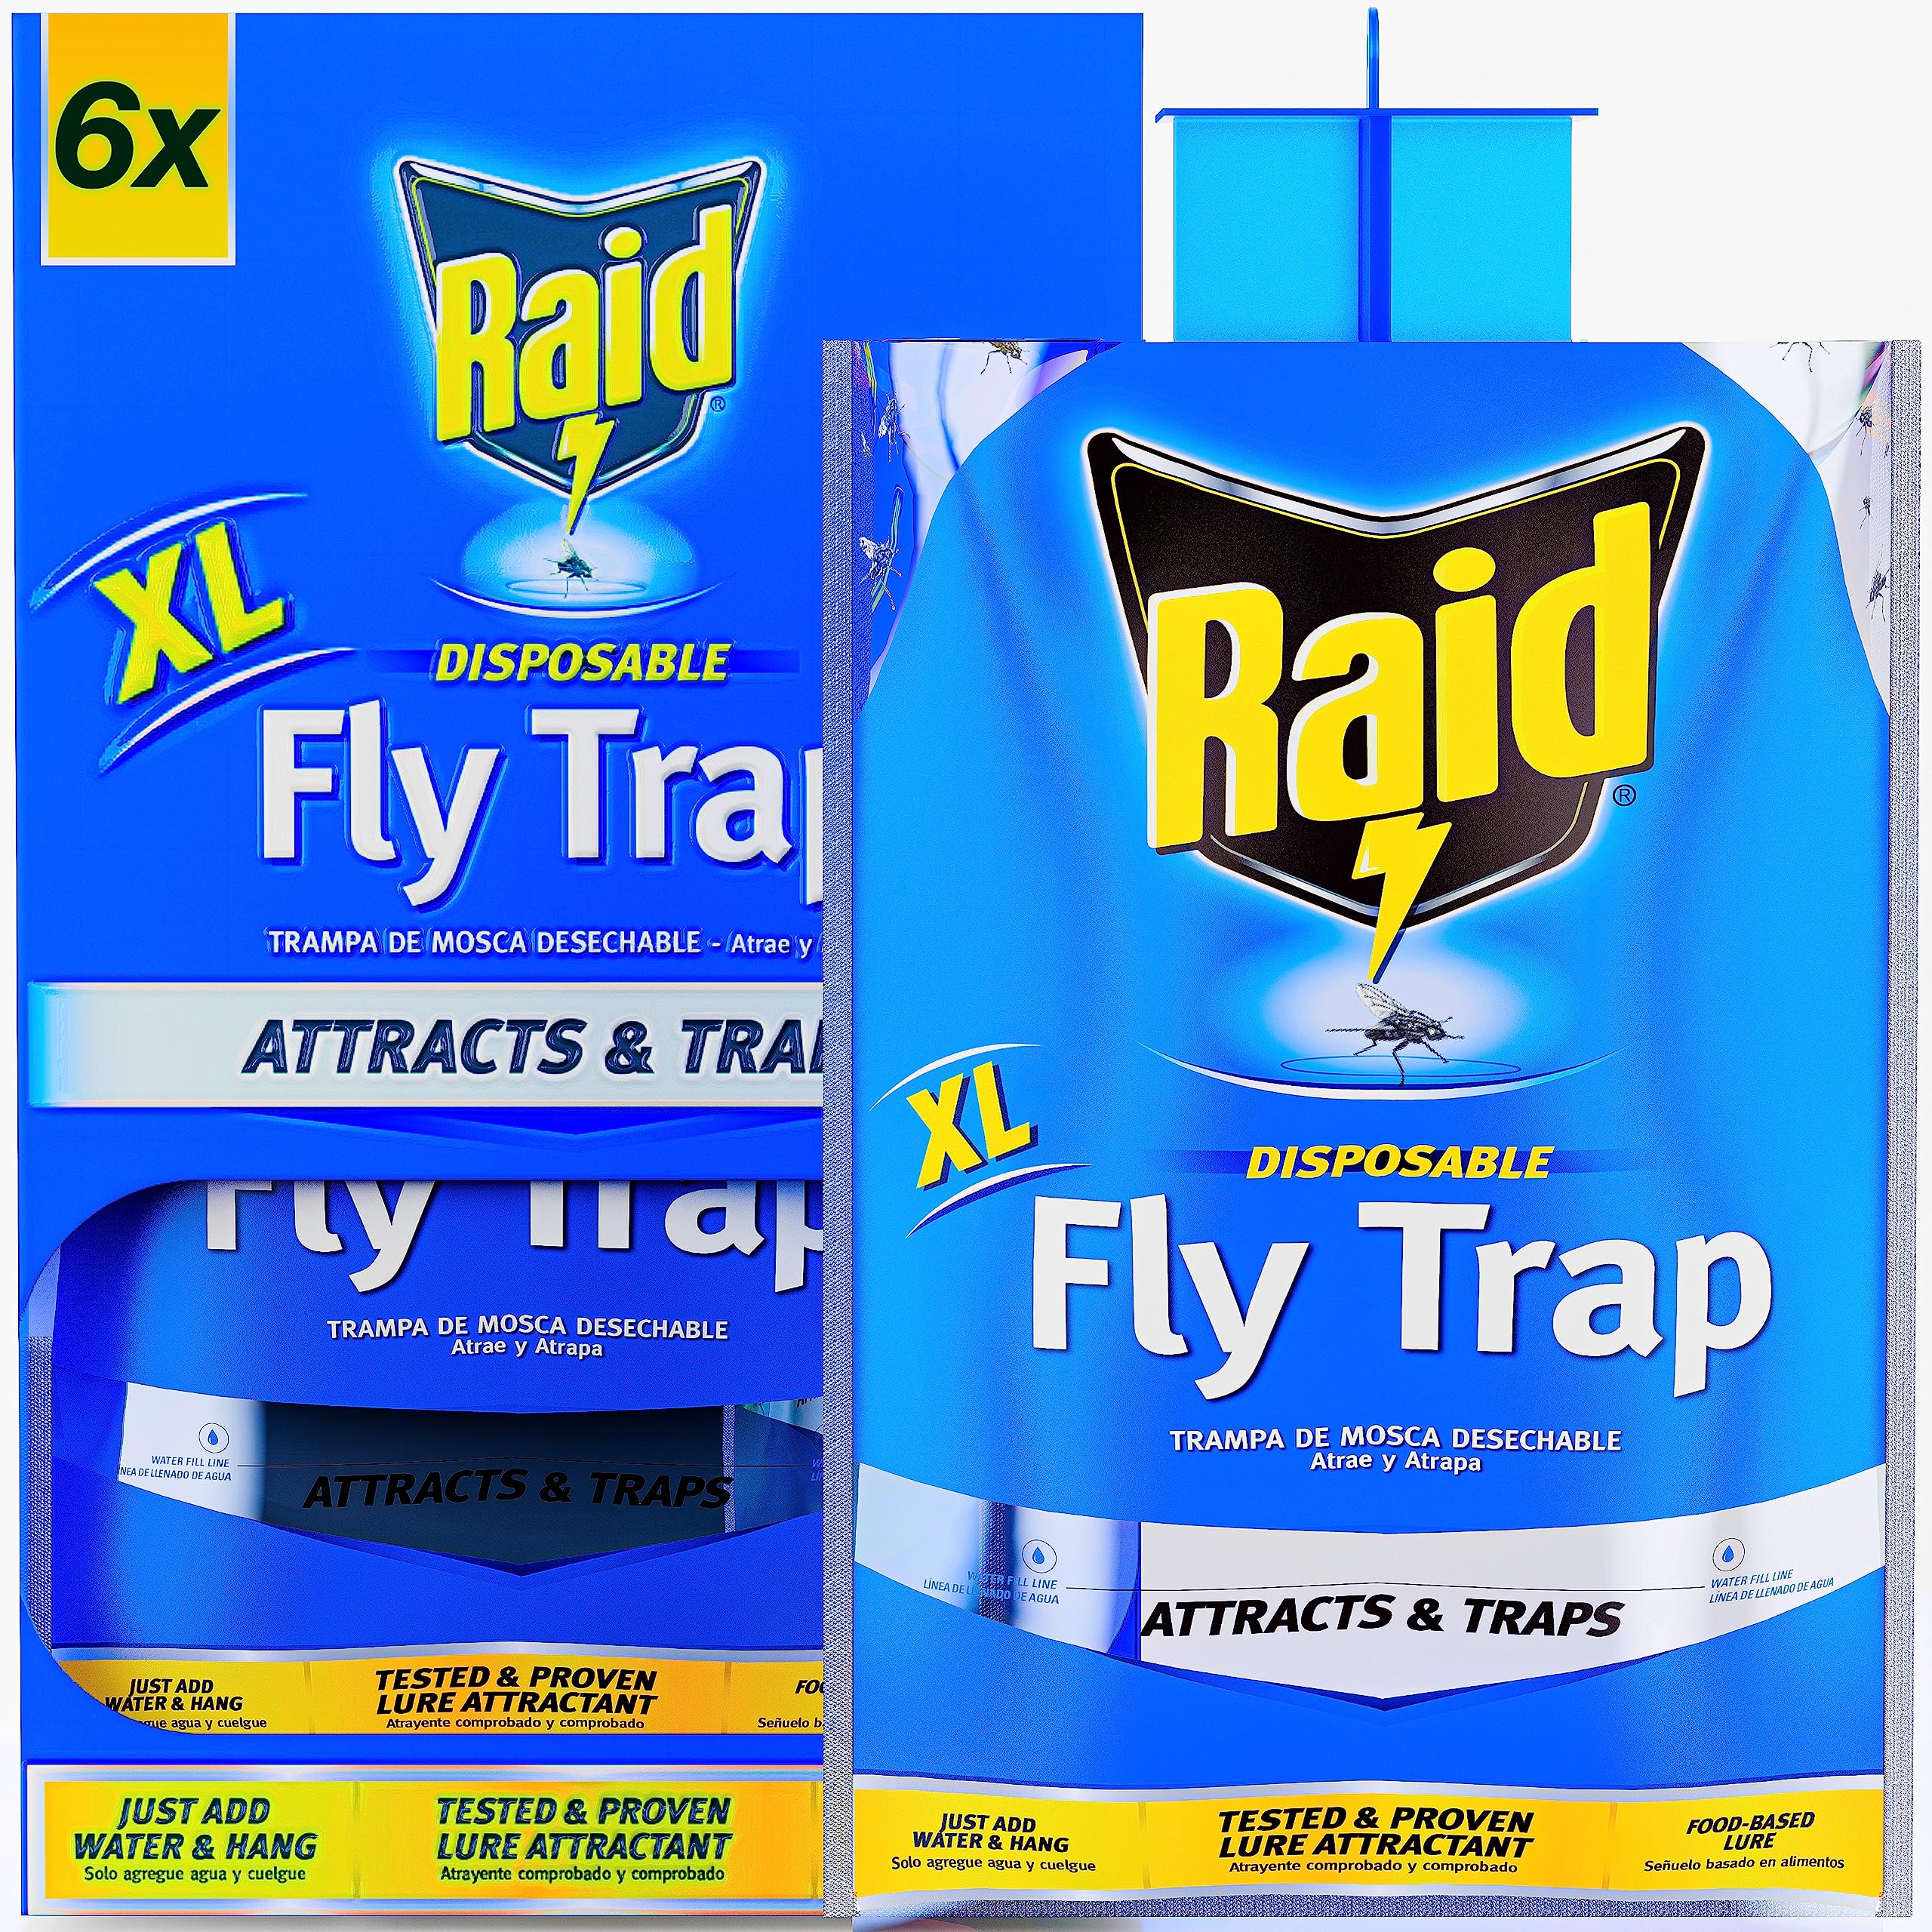 6 XL RAID Big Bag Fliegenfallen Outdoor - Halten Sie Fliegen von der Terrasse fern mit Einweg-Fliegenfallen Outdoor Hängend - Fliegenbeutel Outdoor Einweg, Outdoor Fliegenfallen Outdoor Hängen, Big